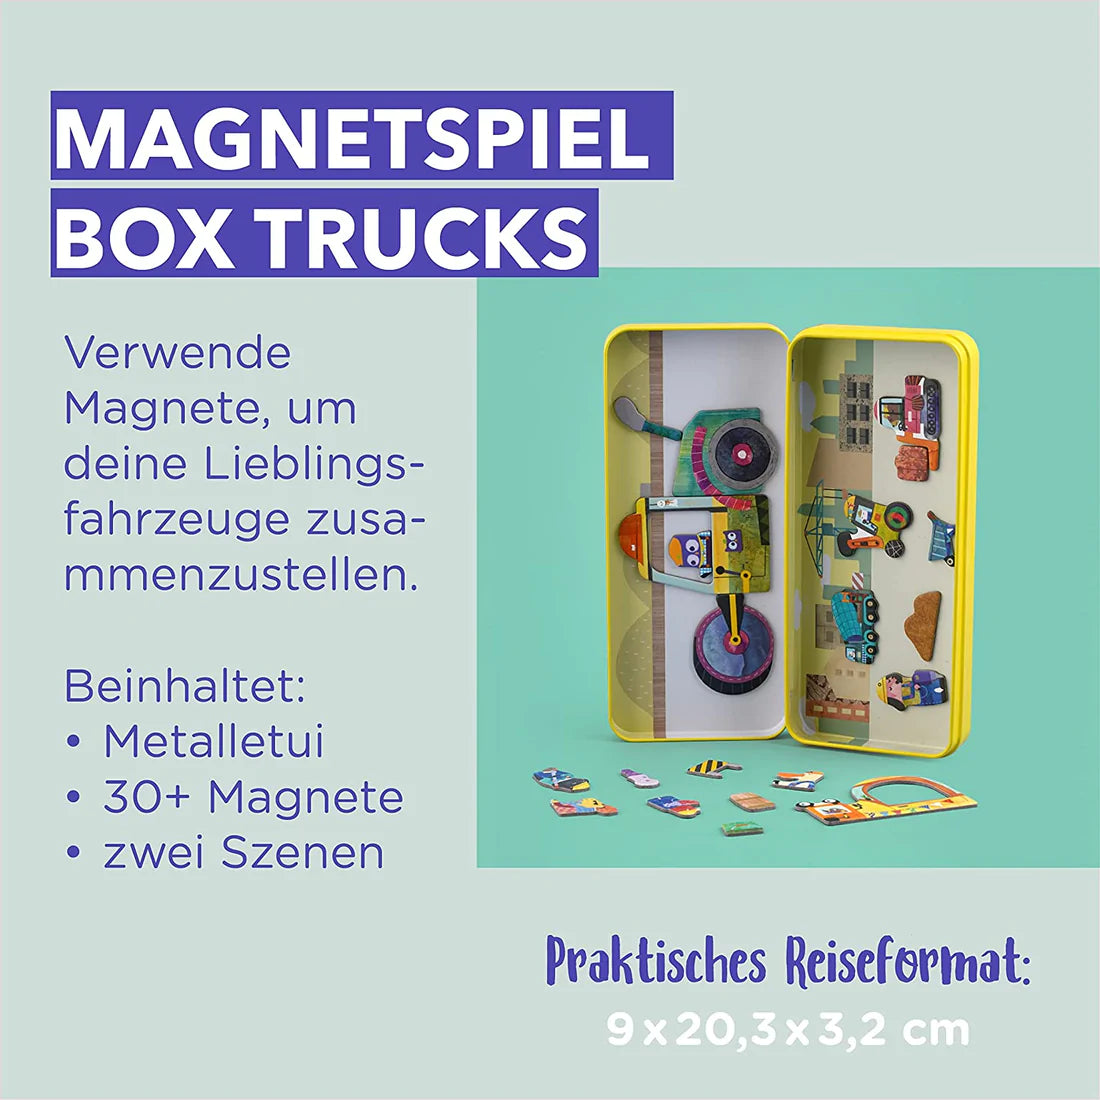 mierEdu Magnetspiel Box, Trucks,Fördert Motorik und Fantasie,Ideal für Zuhause und als Reisespiel für Kinder, Magnet Spielzeug